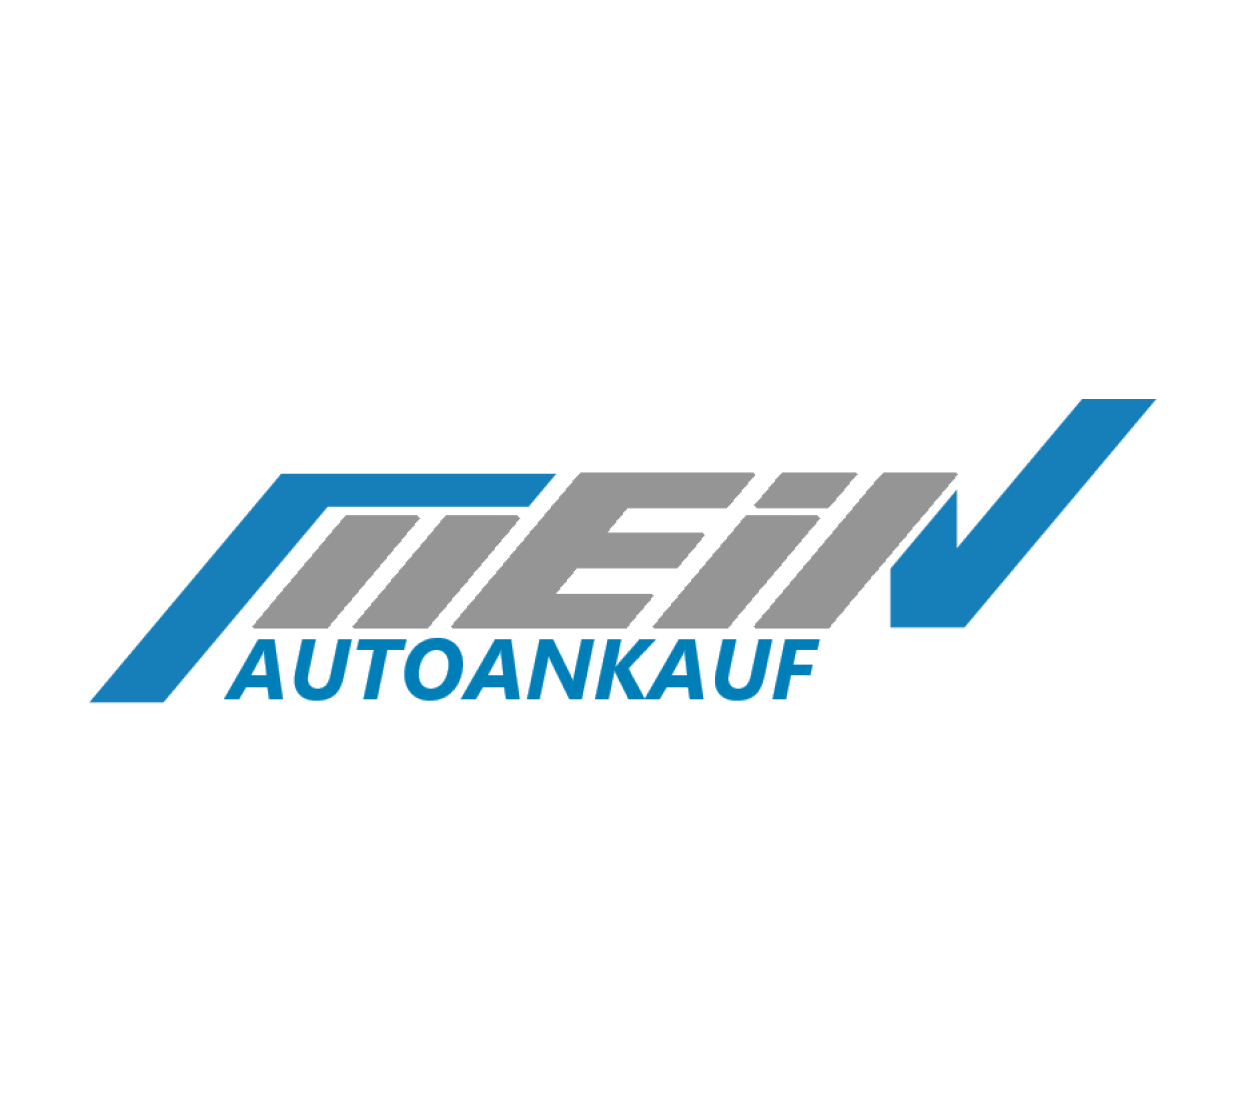 Gebrauchtwagenverkauf: Autoankauf mit Mein-auto-ankauf.de